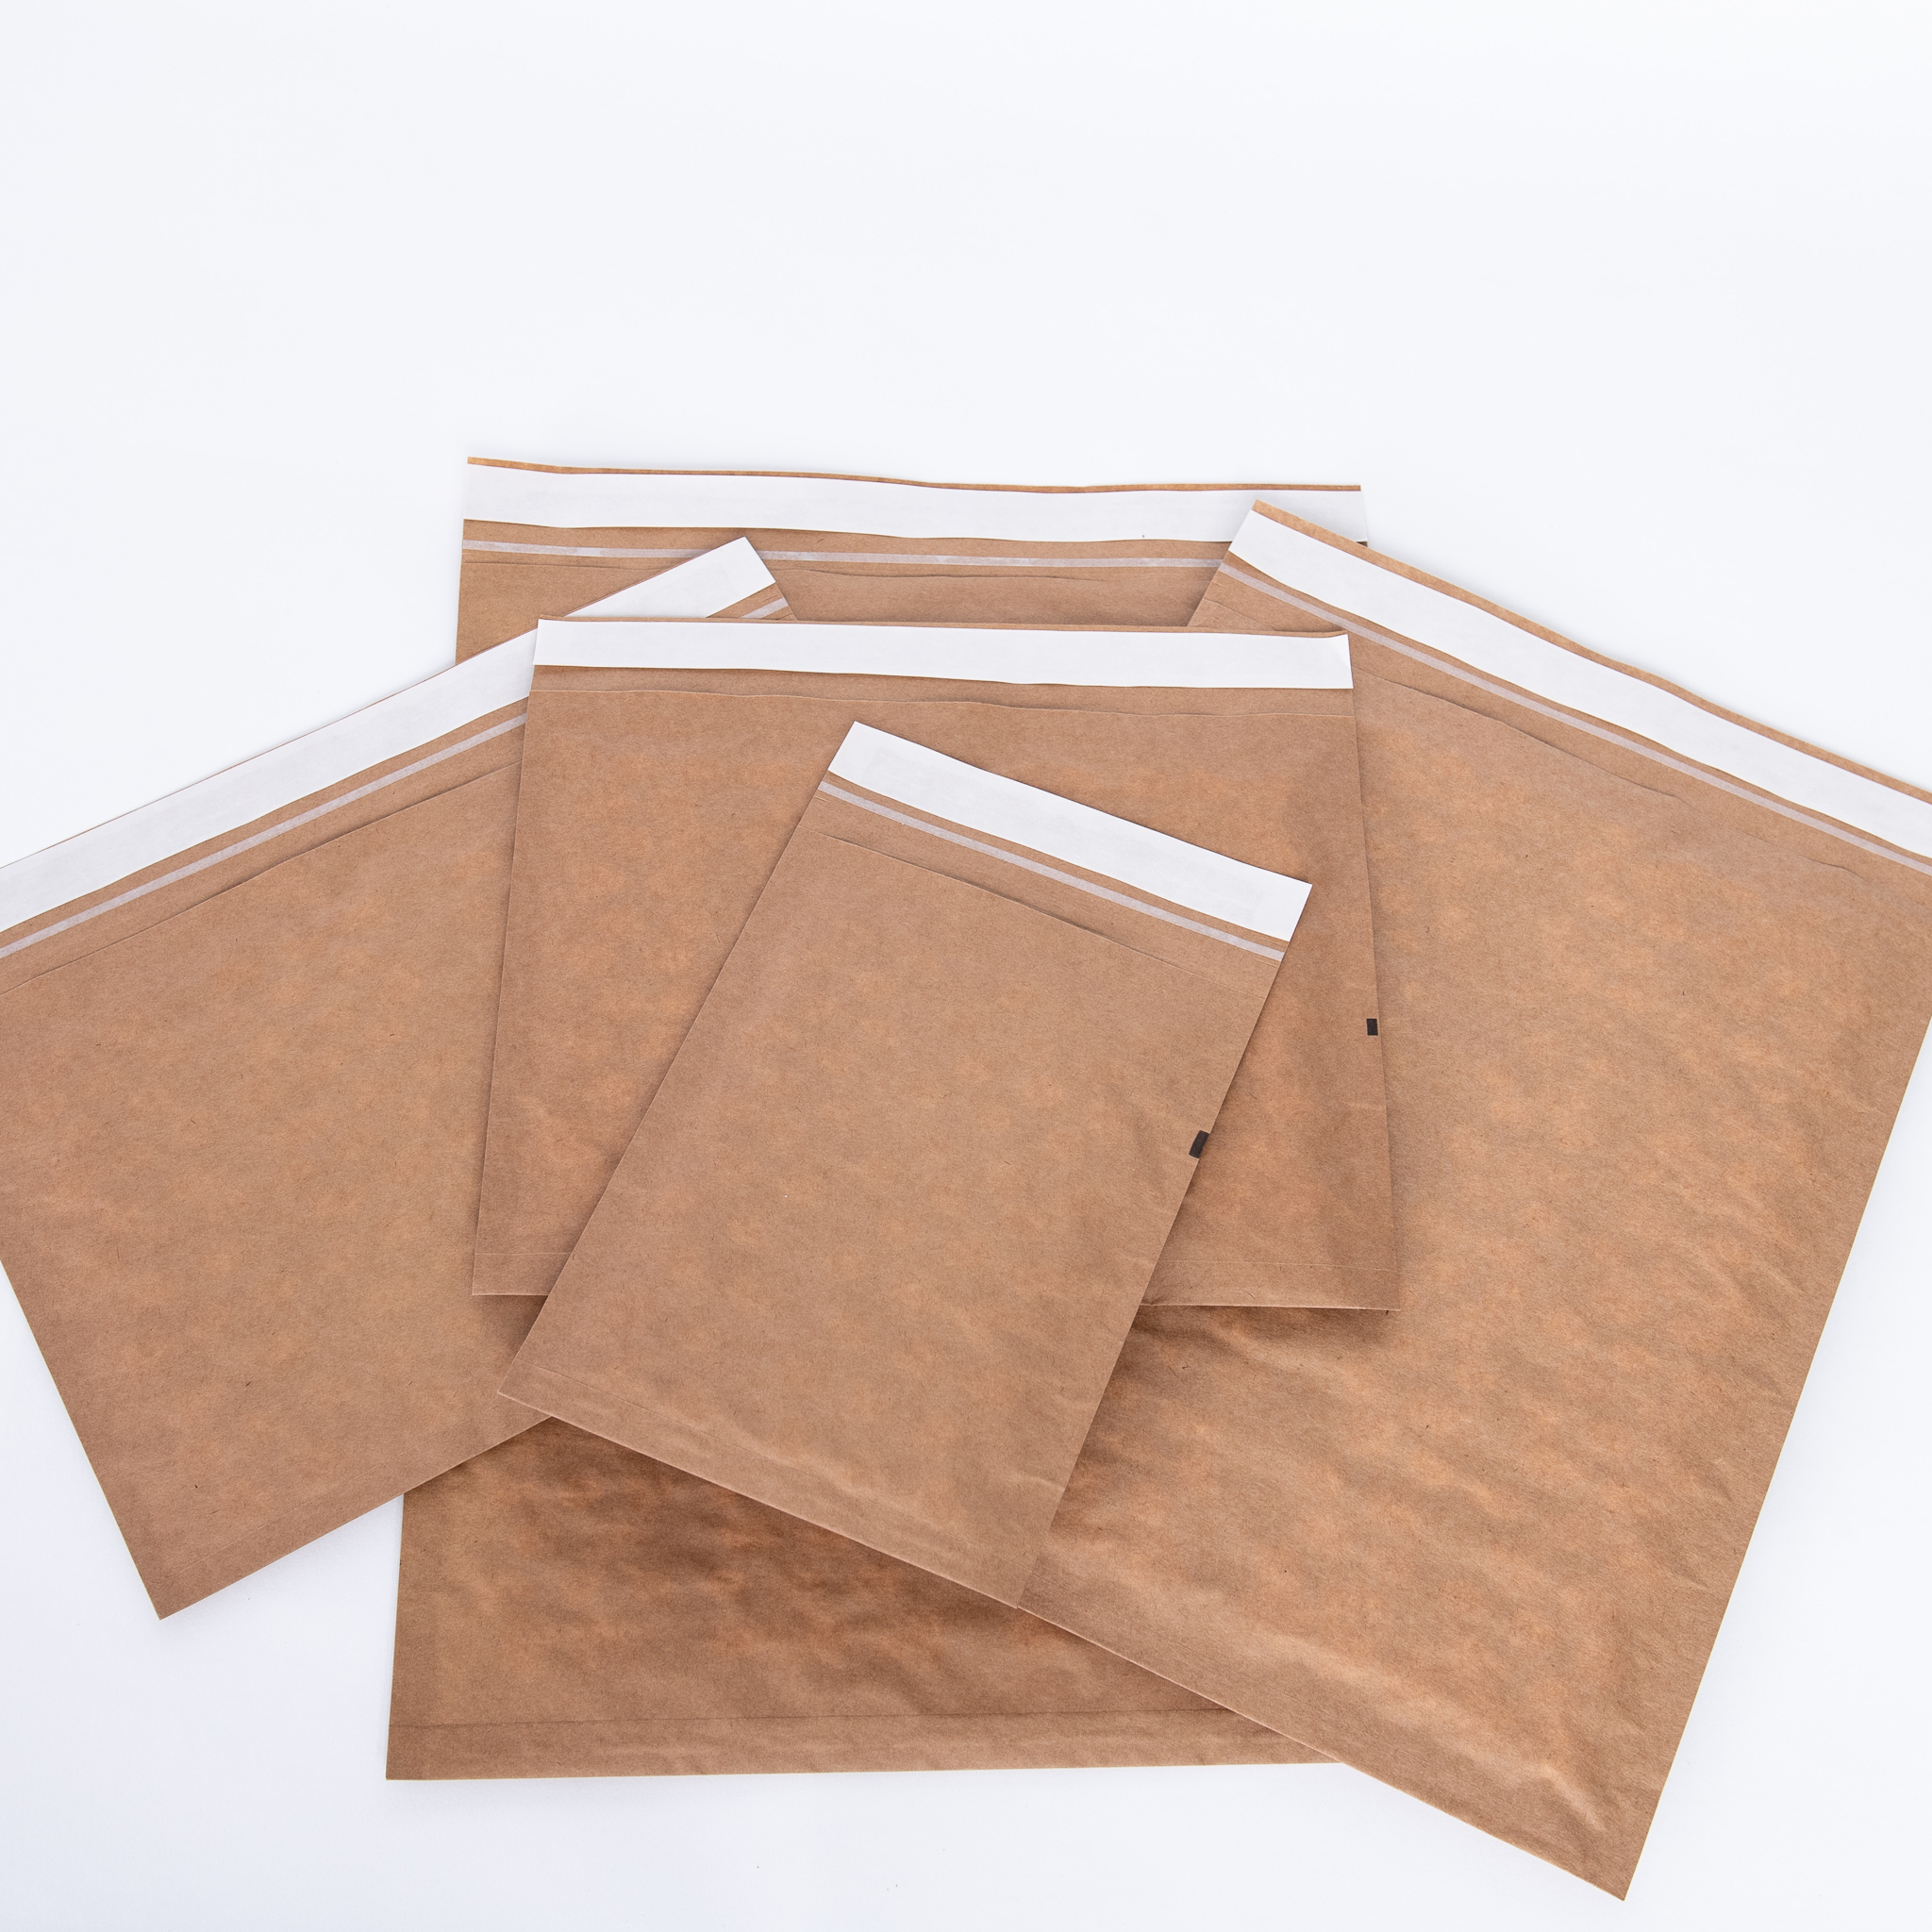 Filler Paper, Efficient & Eco-Friendly Paper